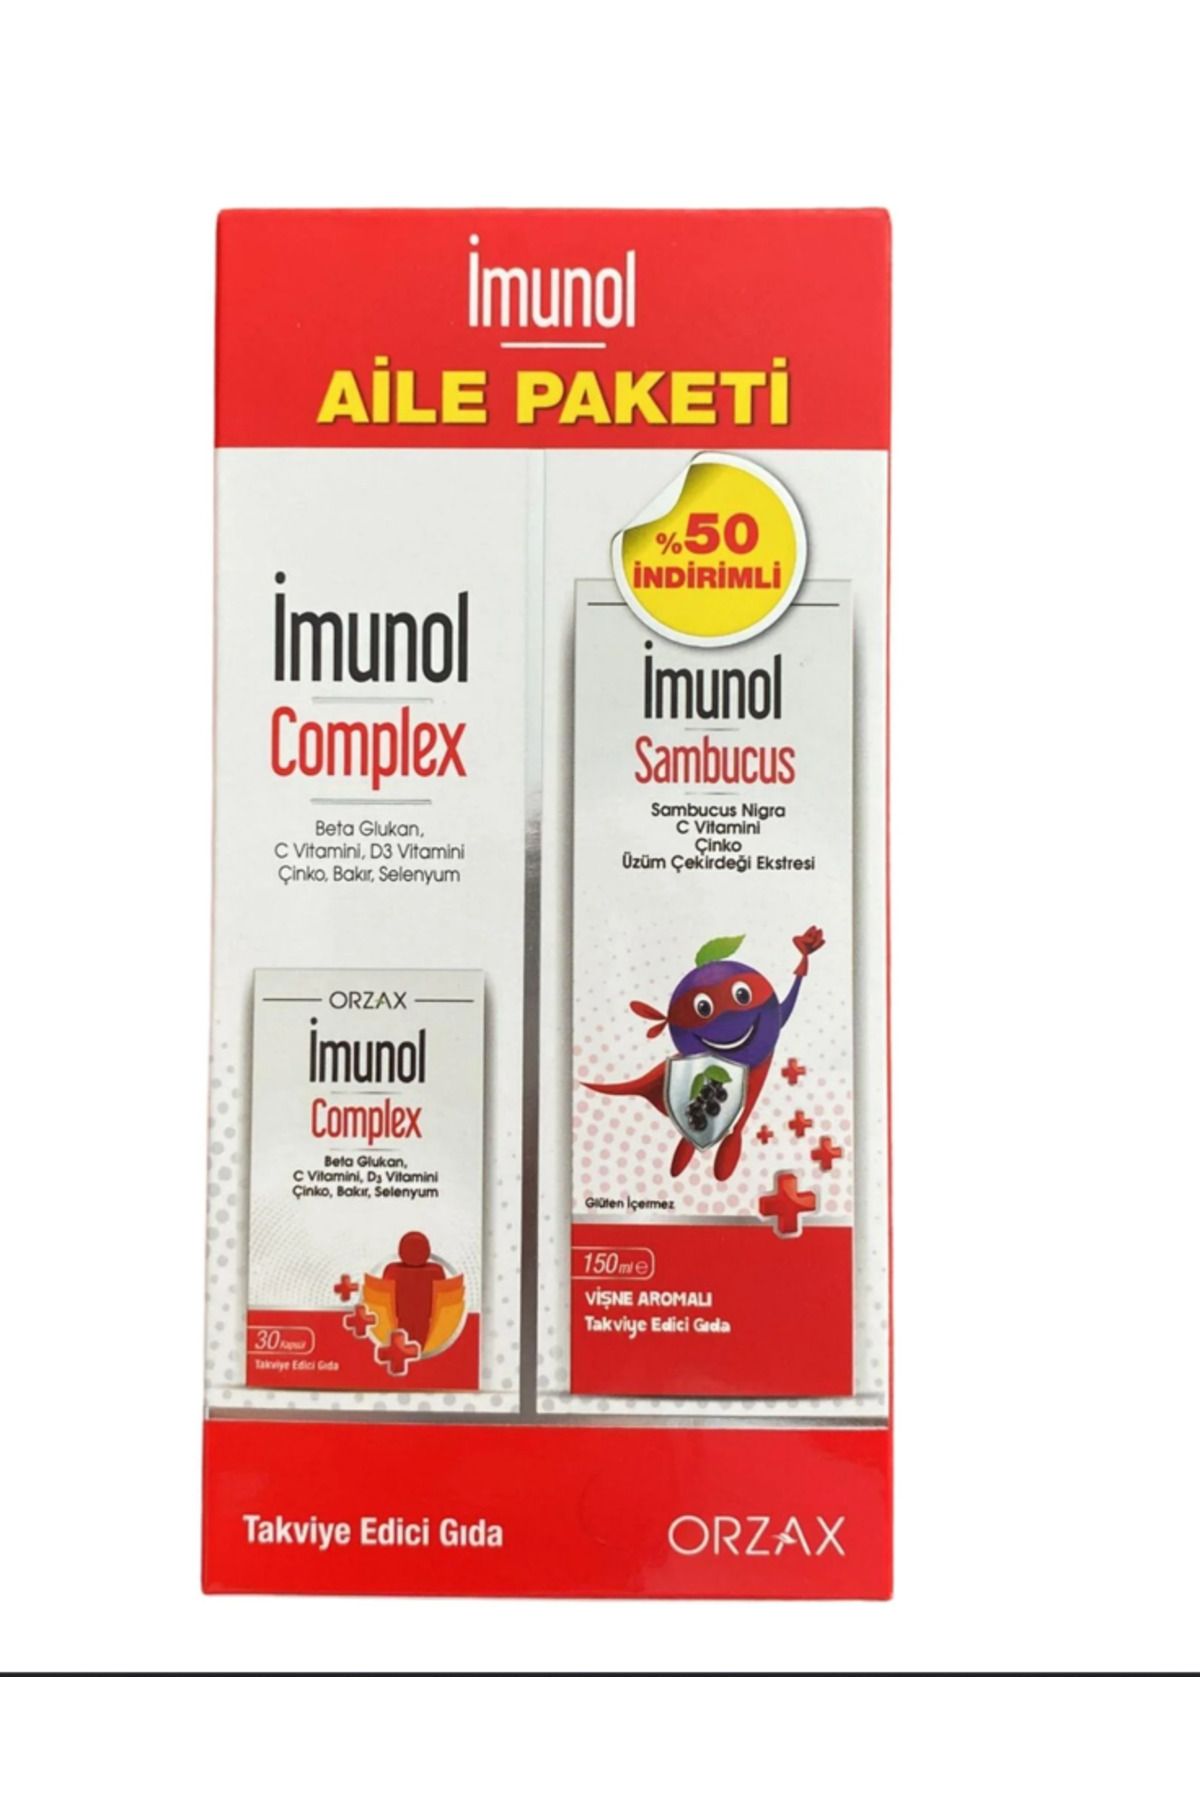 İMUNOL Orzax İmunol Complex + İmunol Sambucus Aile Paketi